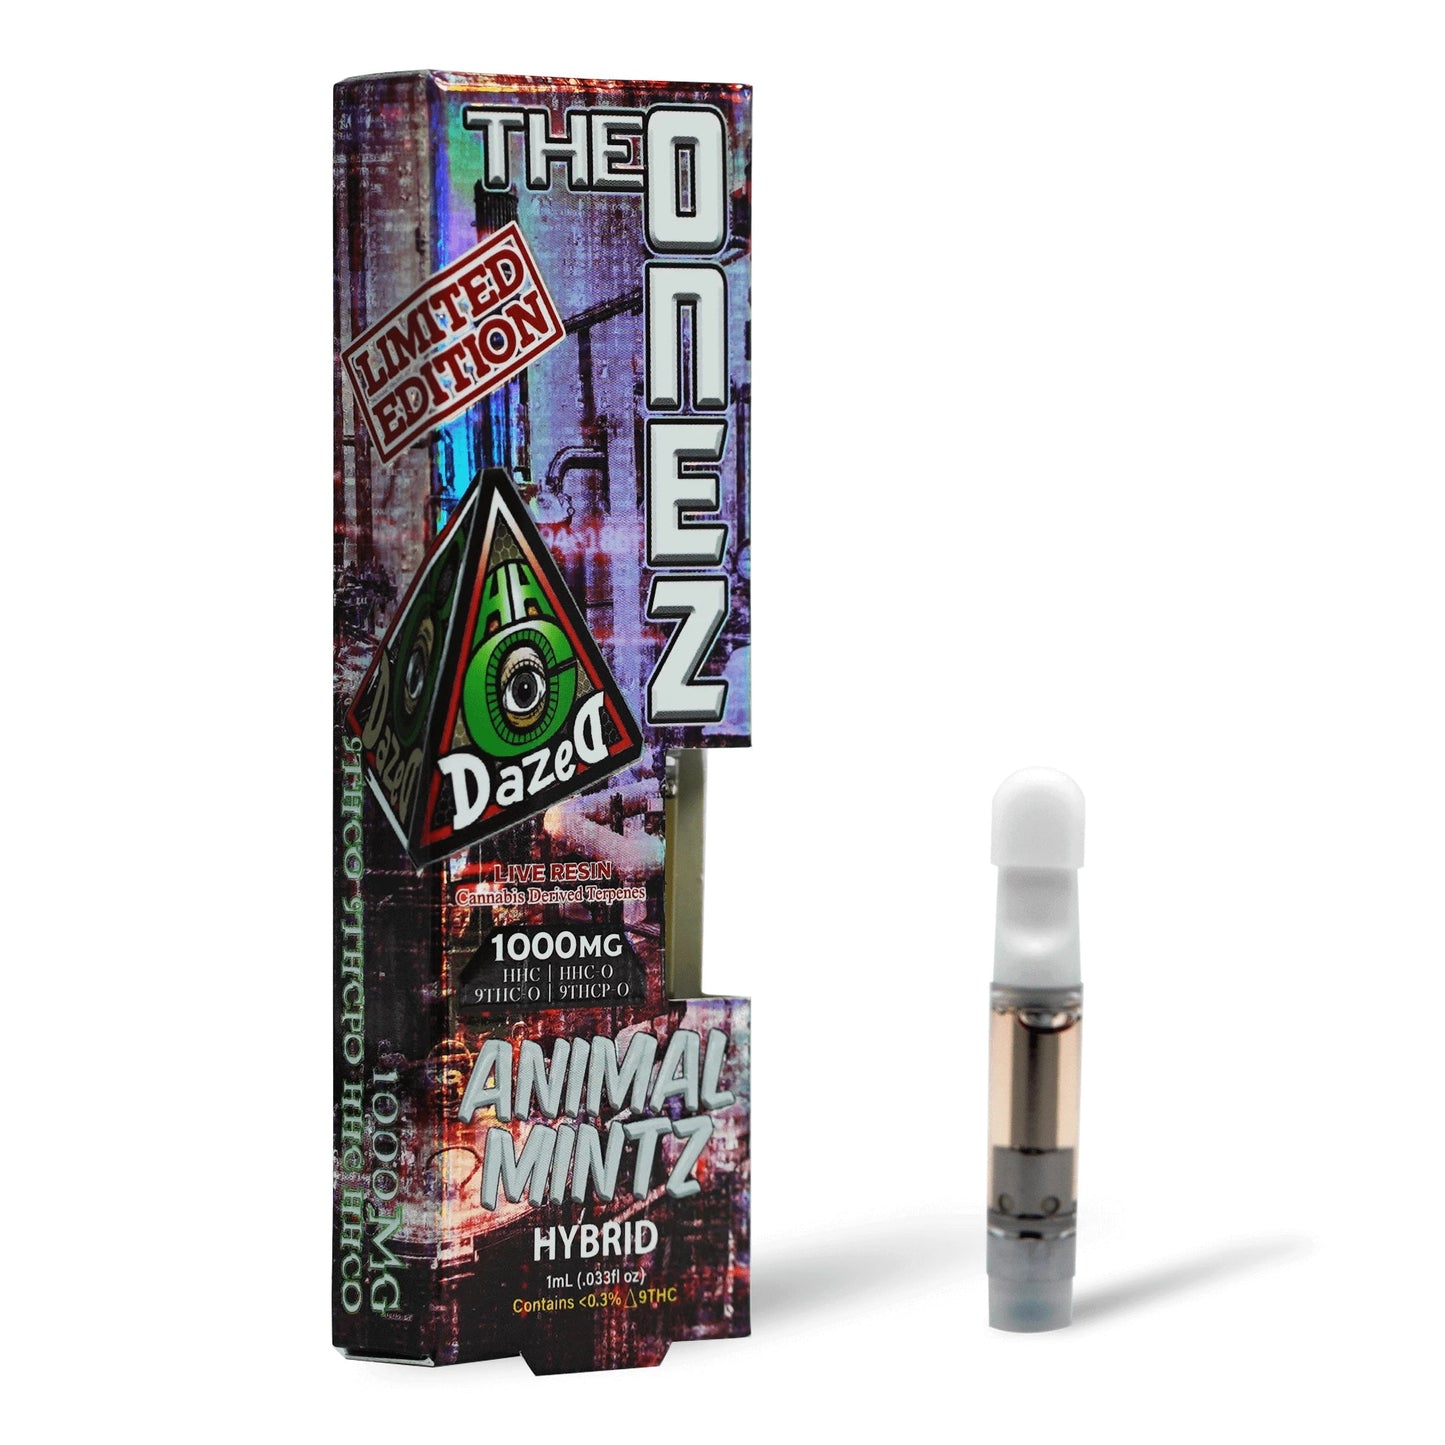 DazeD8 Animal Mintz HHC + HHC-O + D9 THC-O + D9 THCP-O Cartridge (1g) Best Sales Price - Vape Cartridges